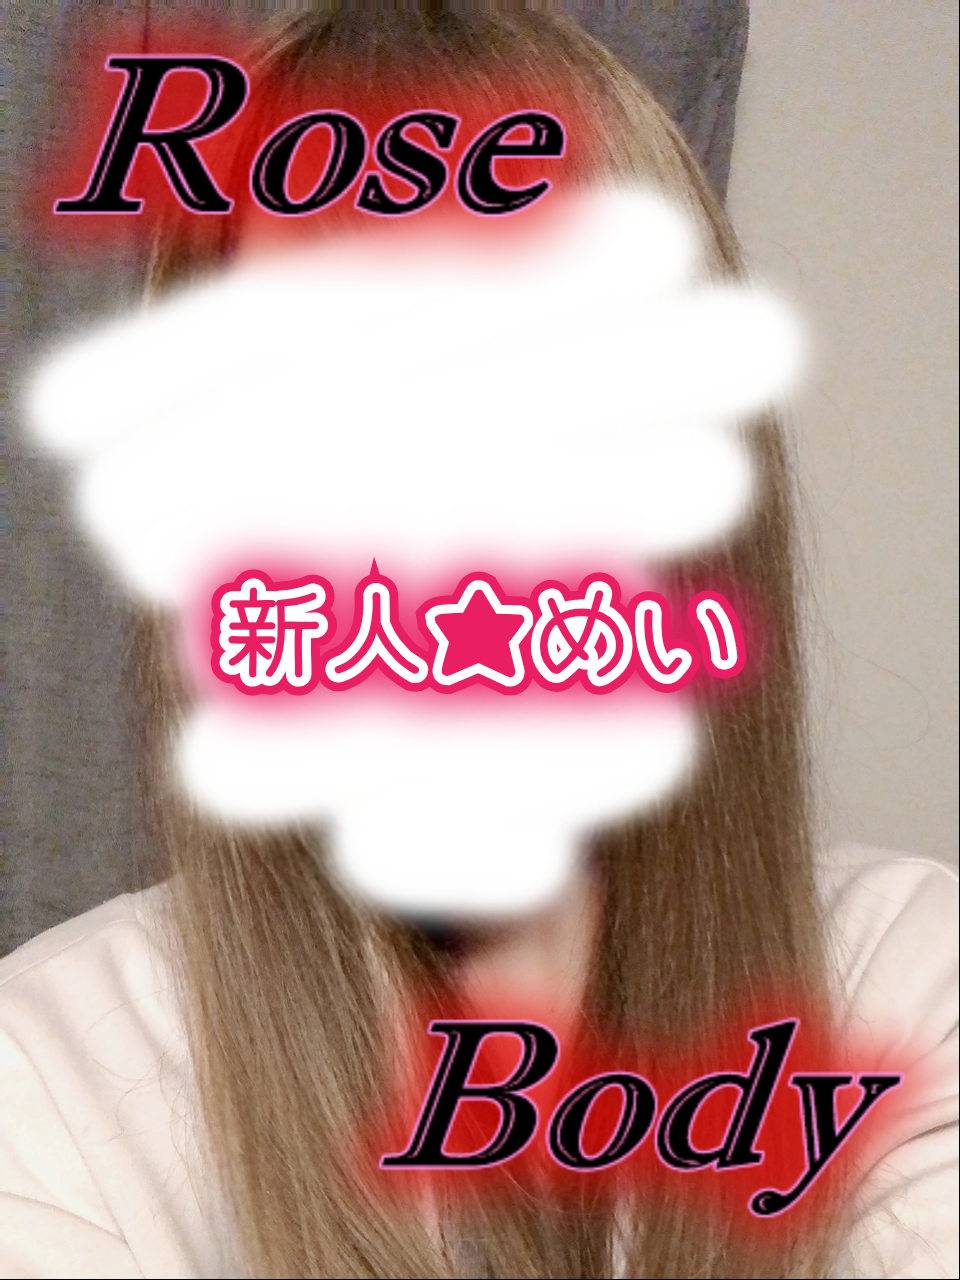 十和田rose bodyおすすめ女の子2